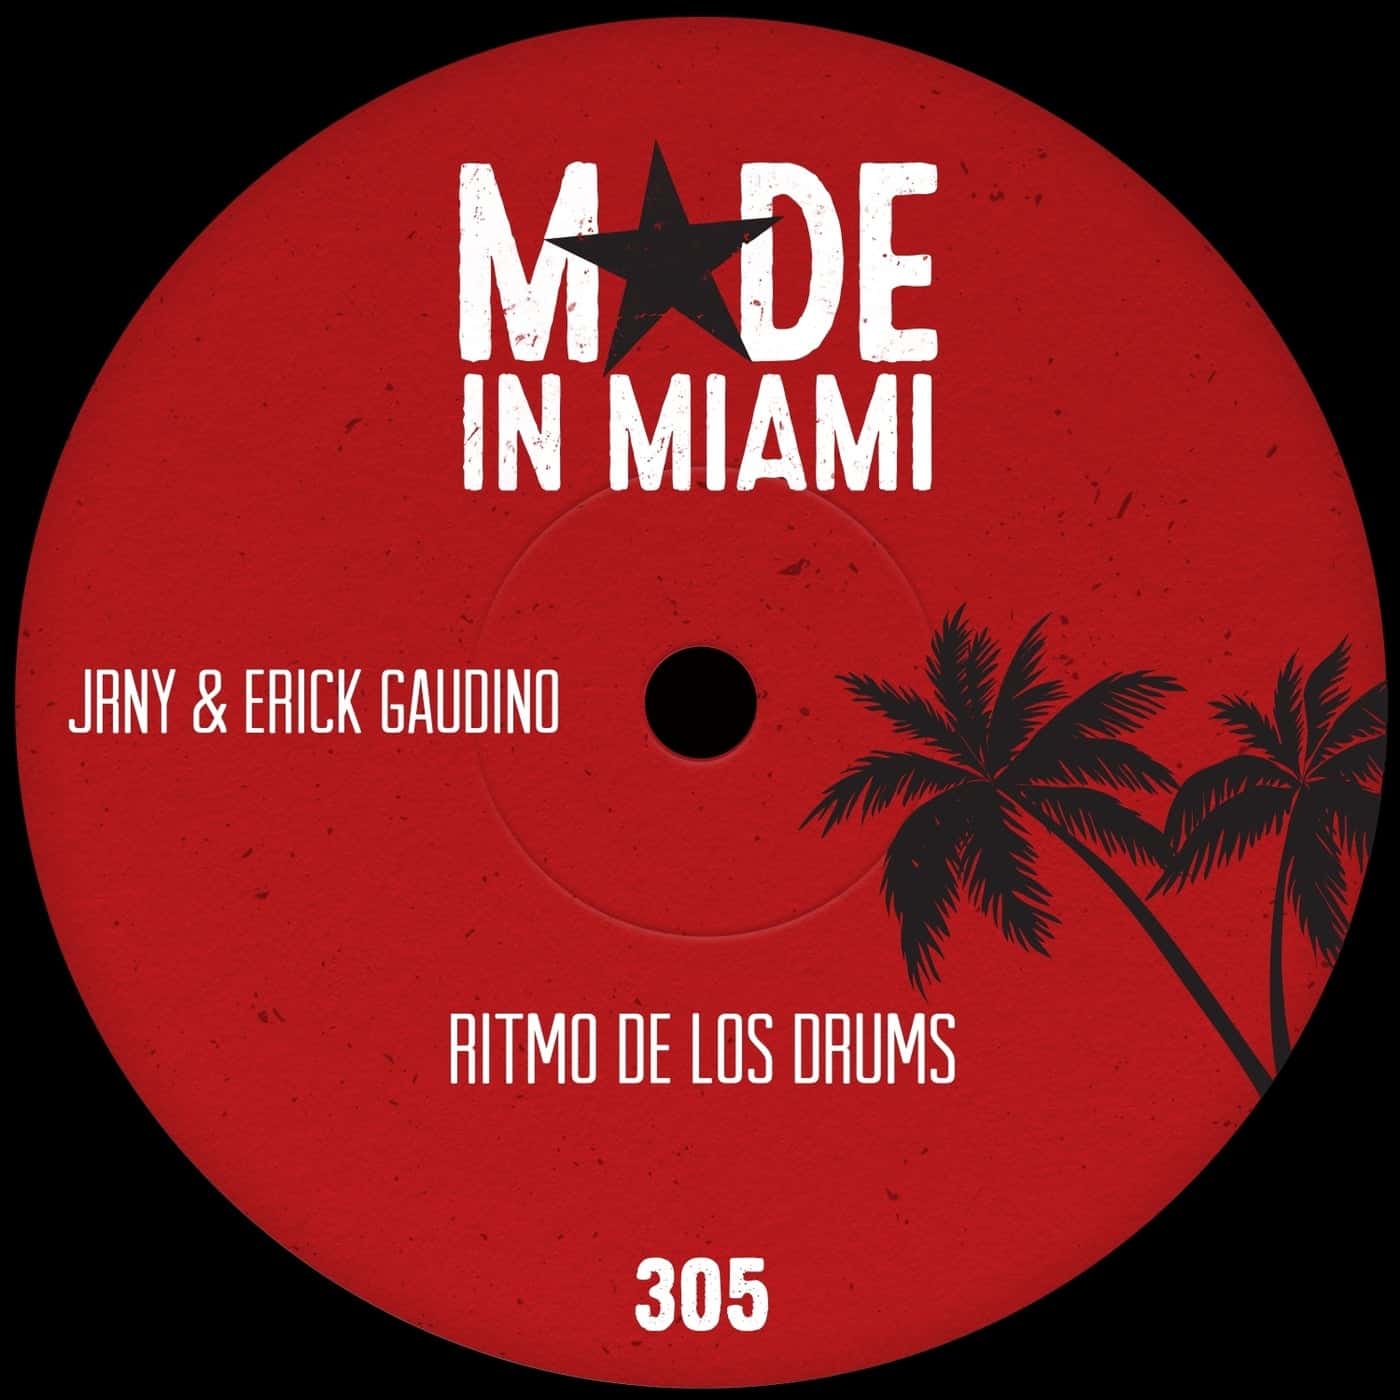 image cover: Jrny, Erick Gaudino - Ritmo De Los Drums on Made In Miami